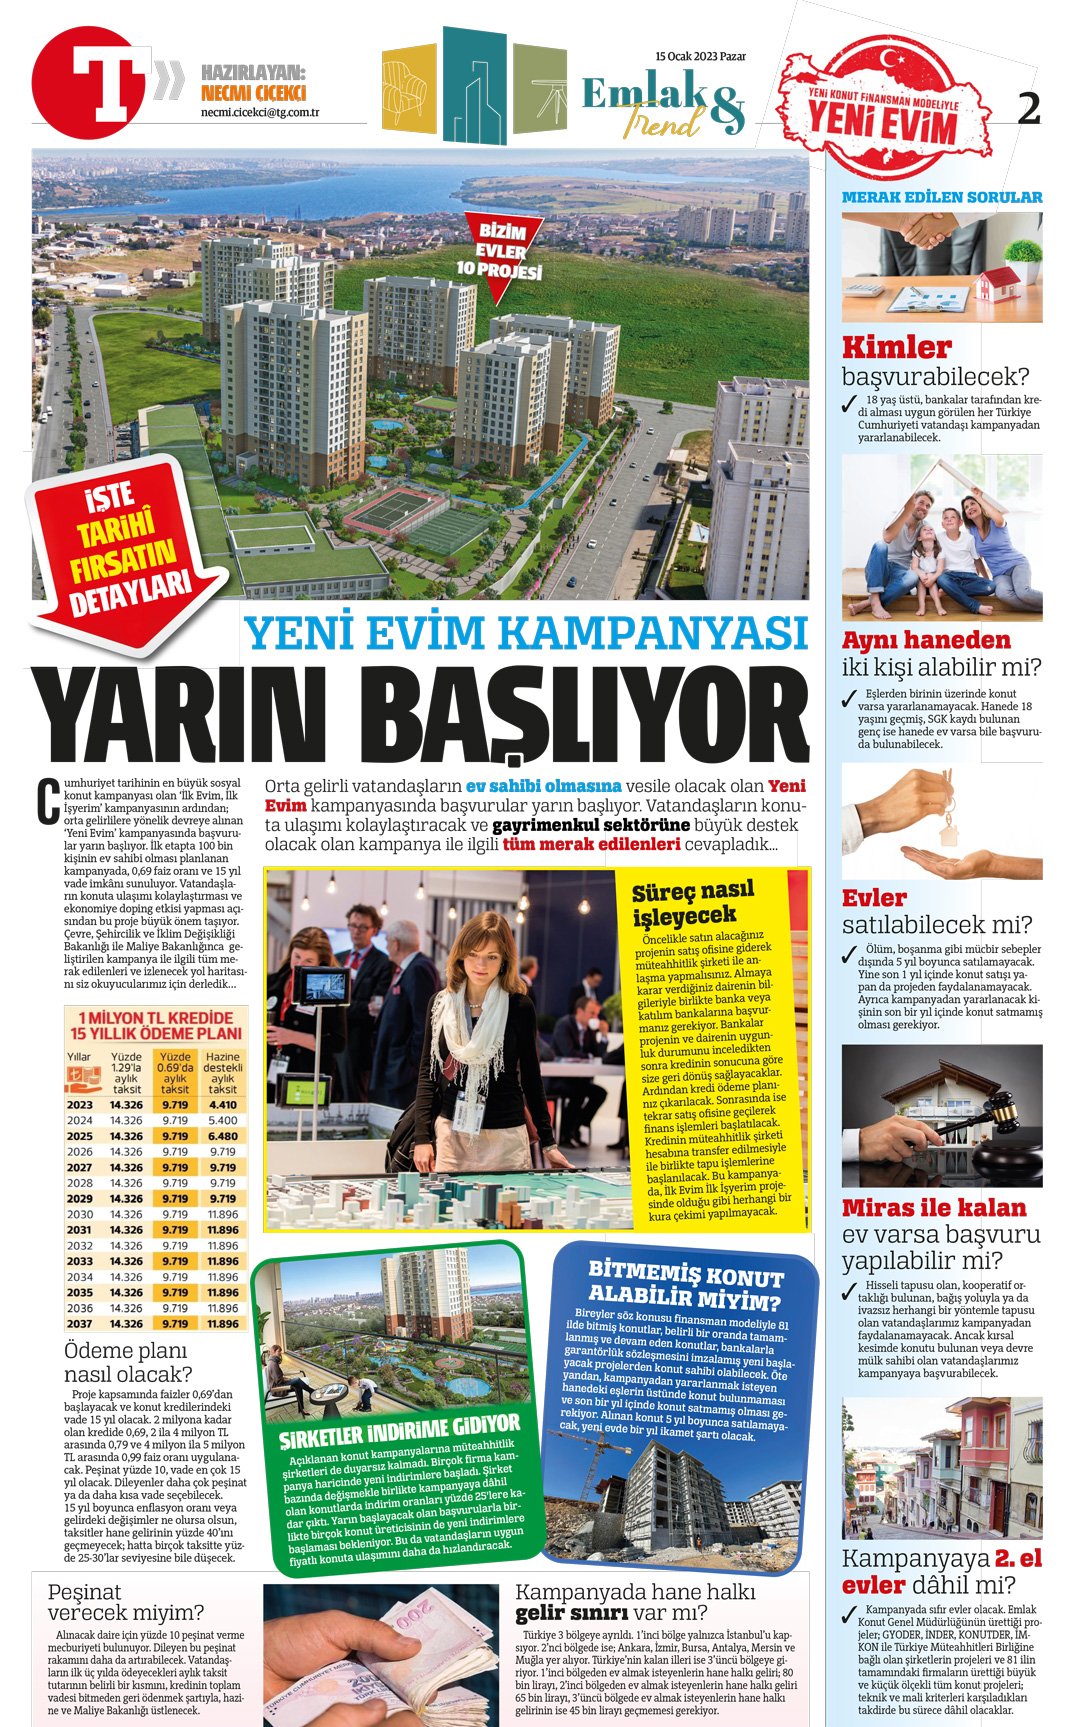 türkiye gazetesi necmi çiçekçi yeni evim kampanyası haberi